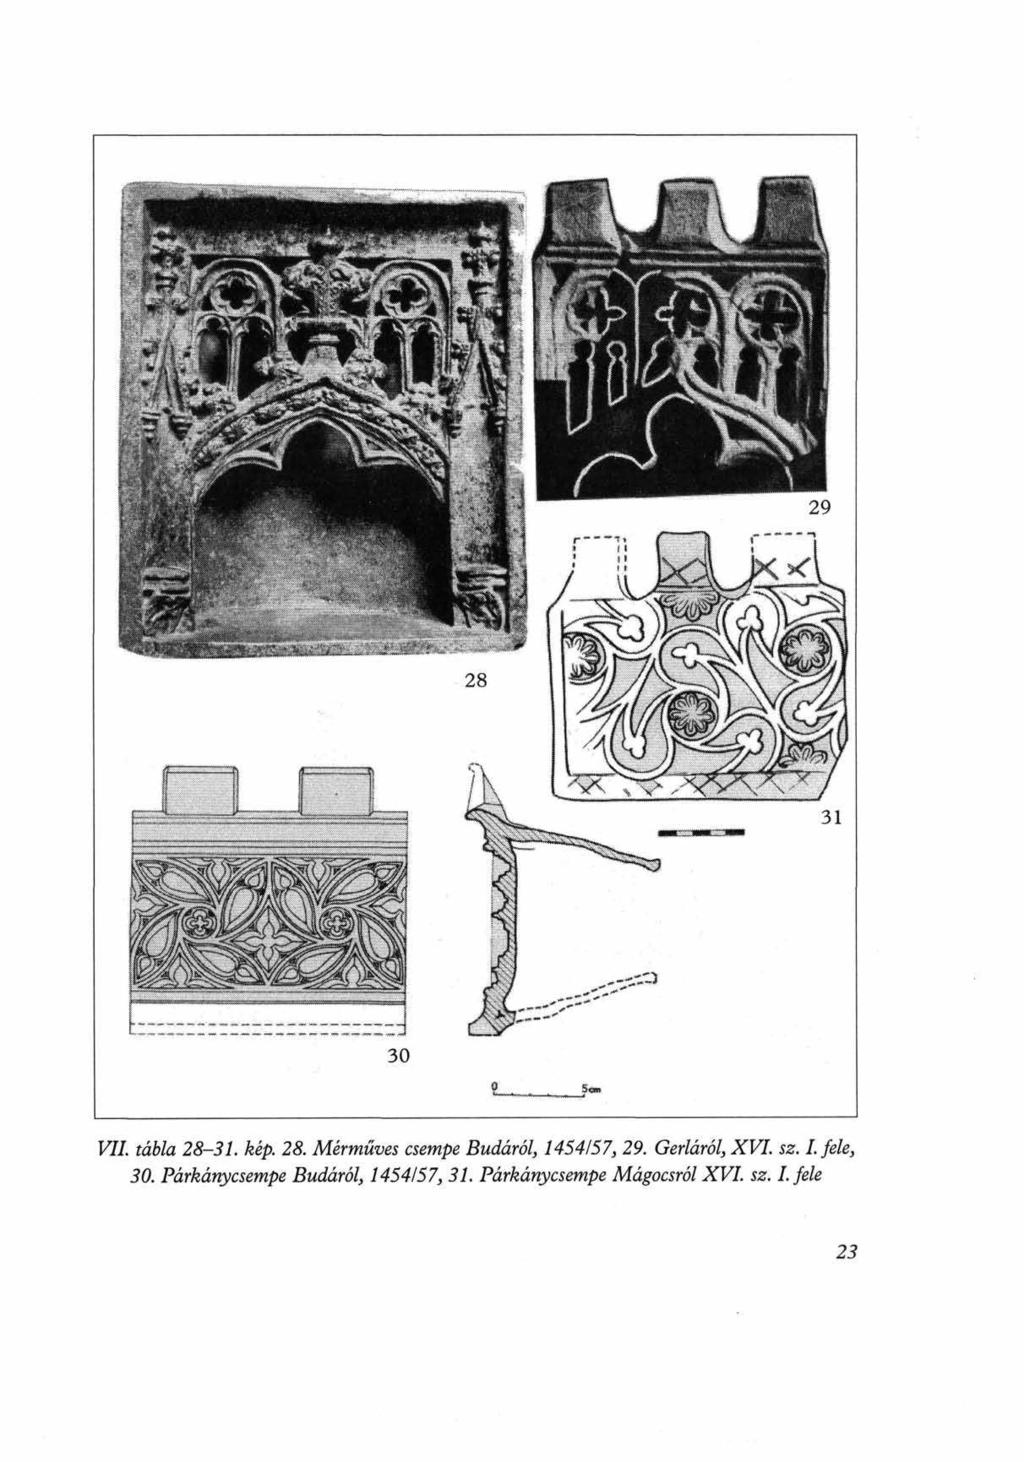 F#. ráwa 25 3/. kép. 28. Mérmüves csempe Budáról, 1454157, 29. Gerláról, XVI. sz. I.